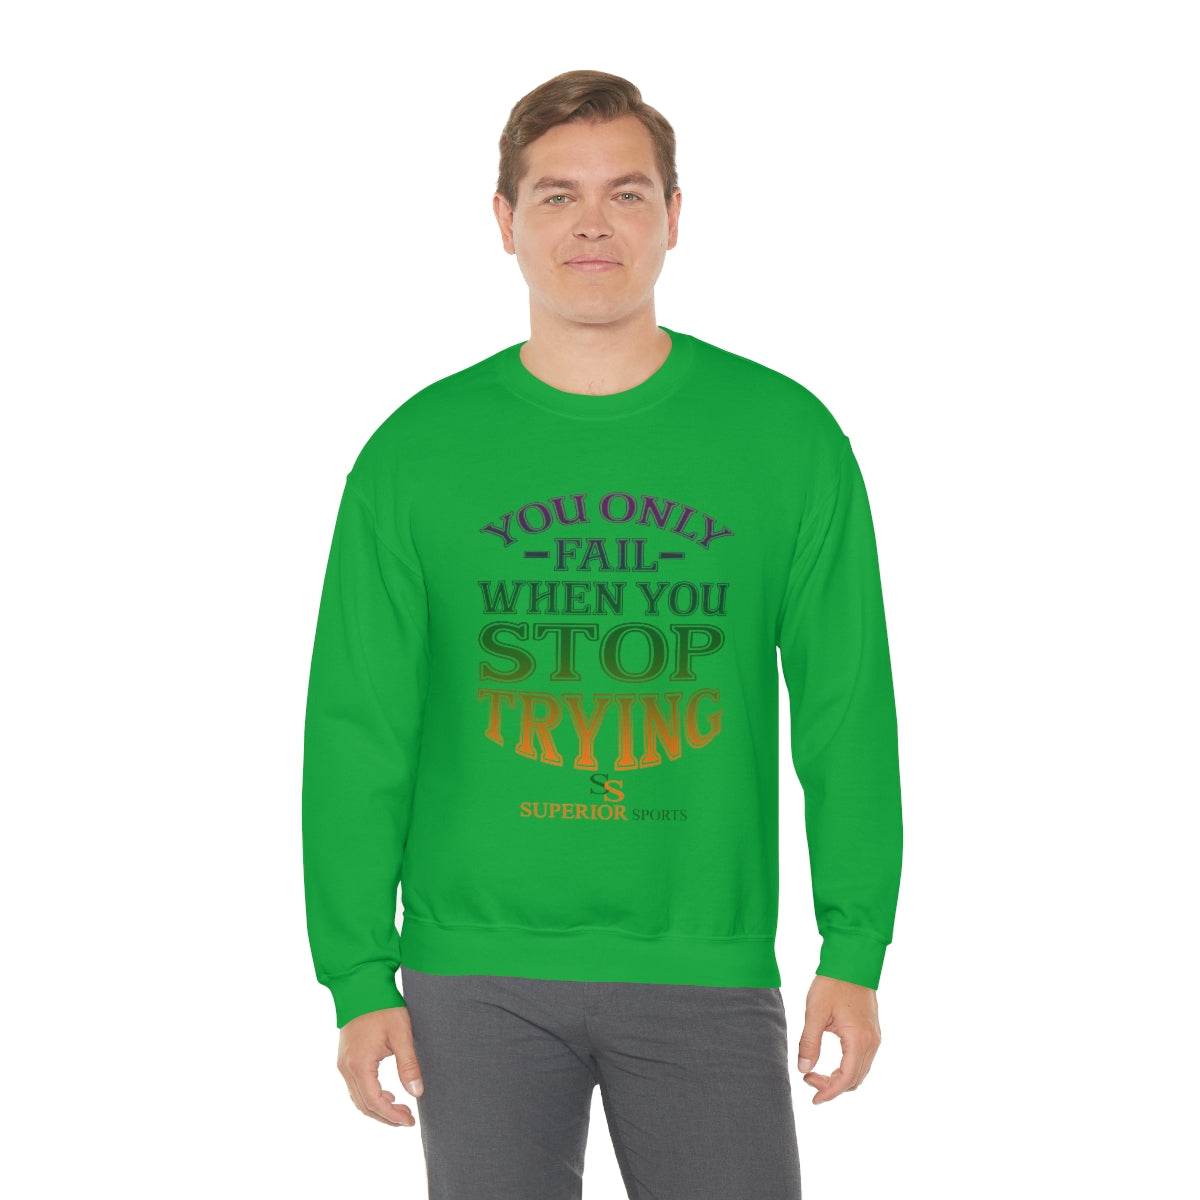 Men Crewneck Sweatshirt